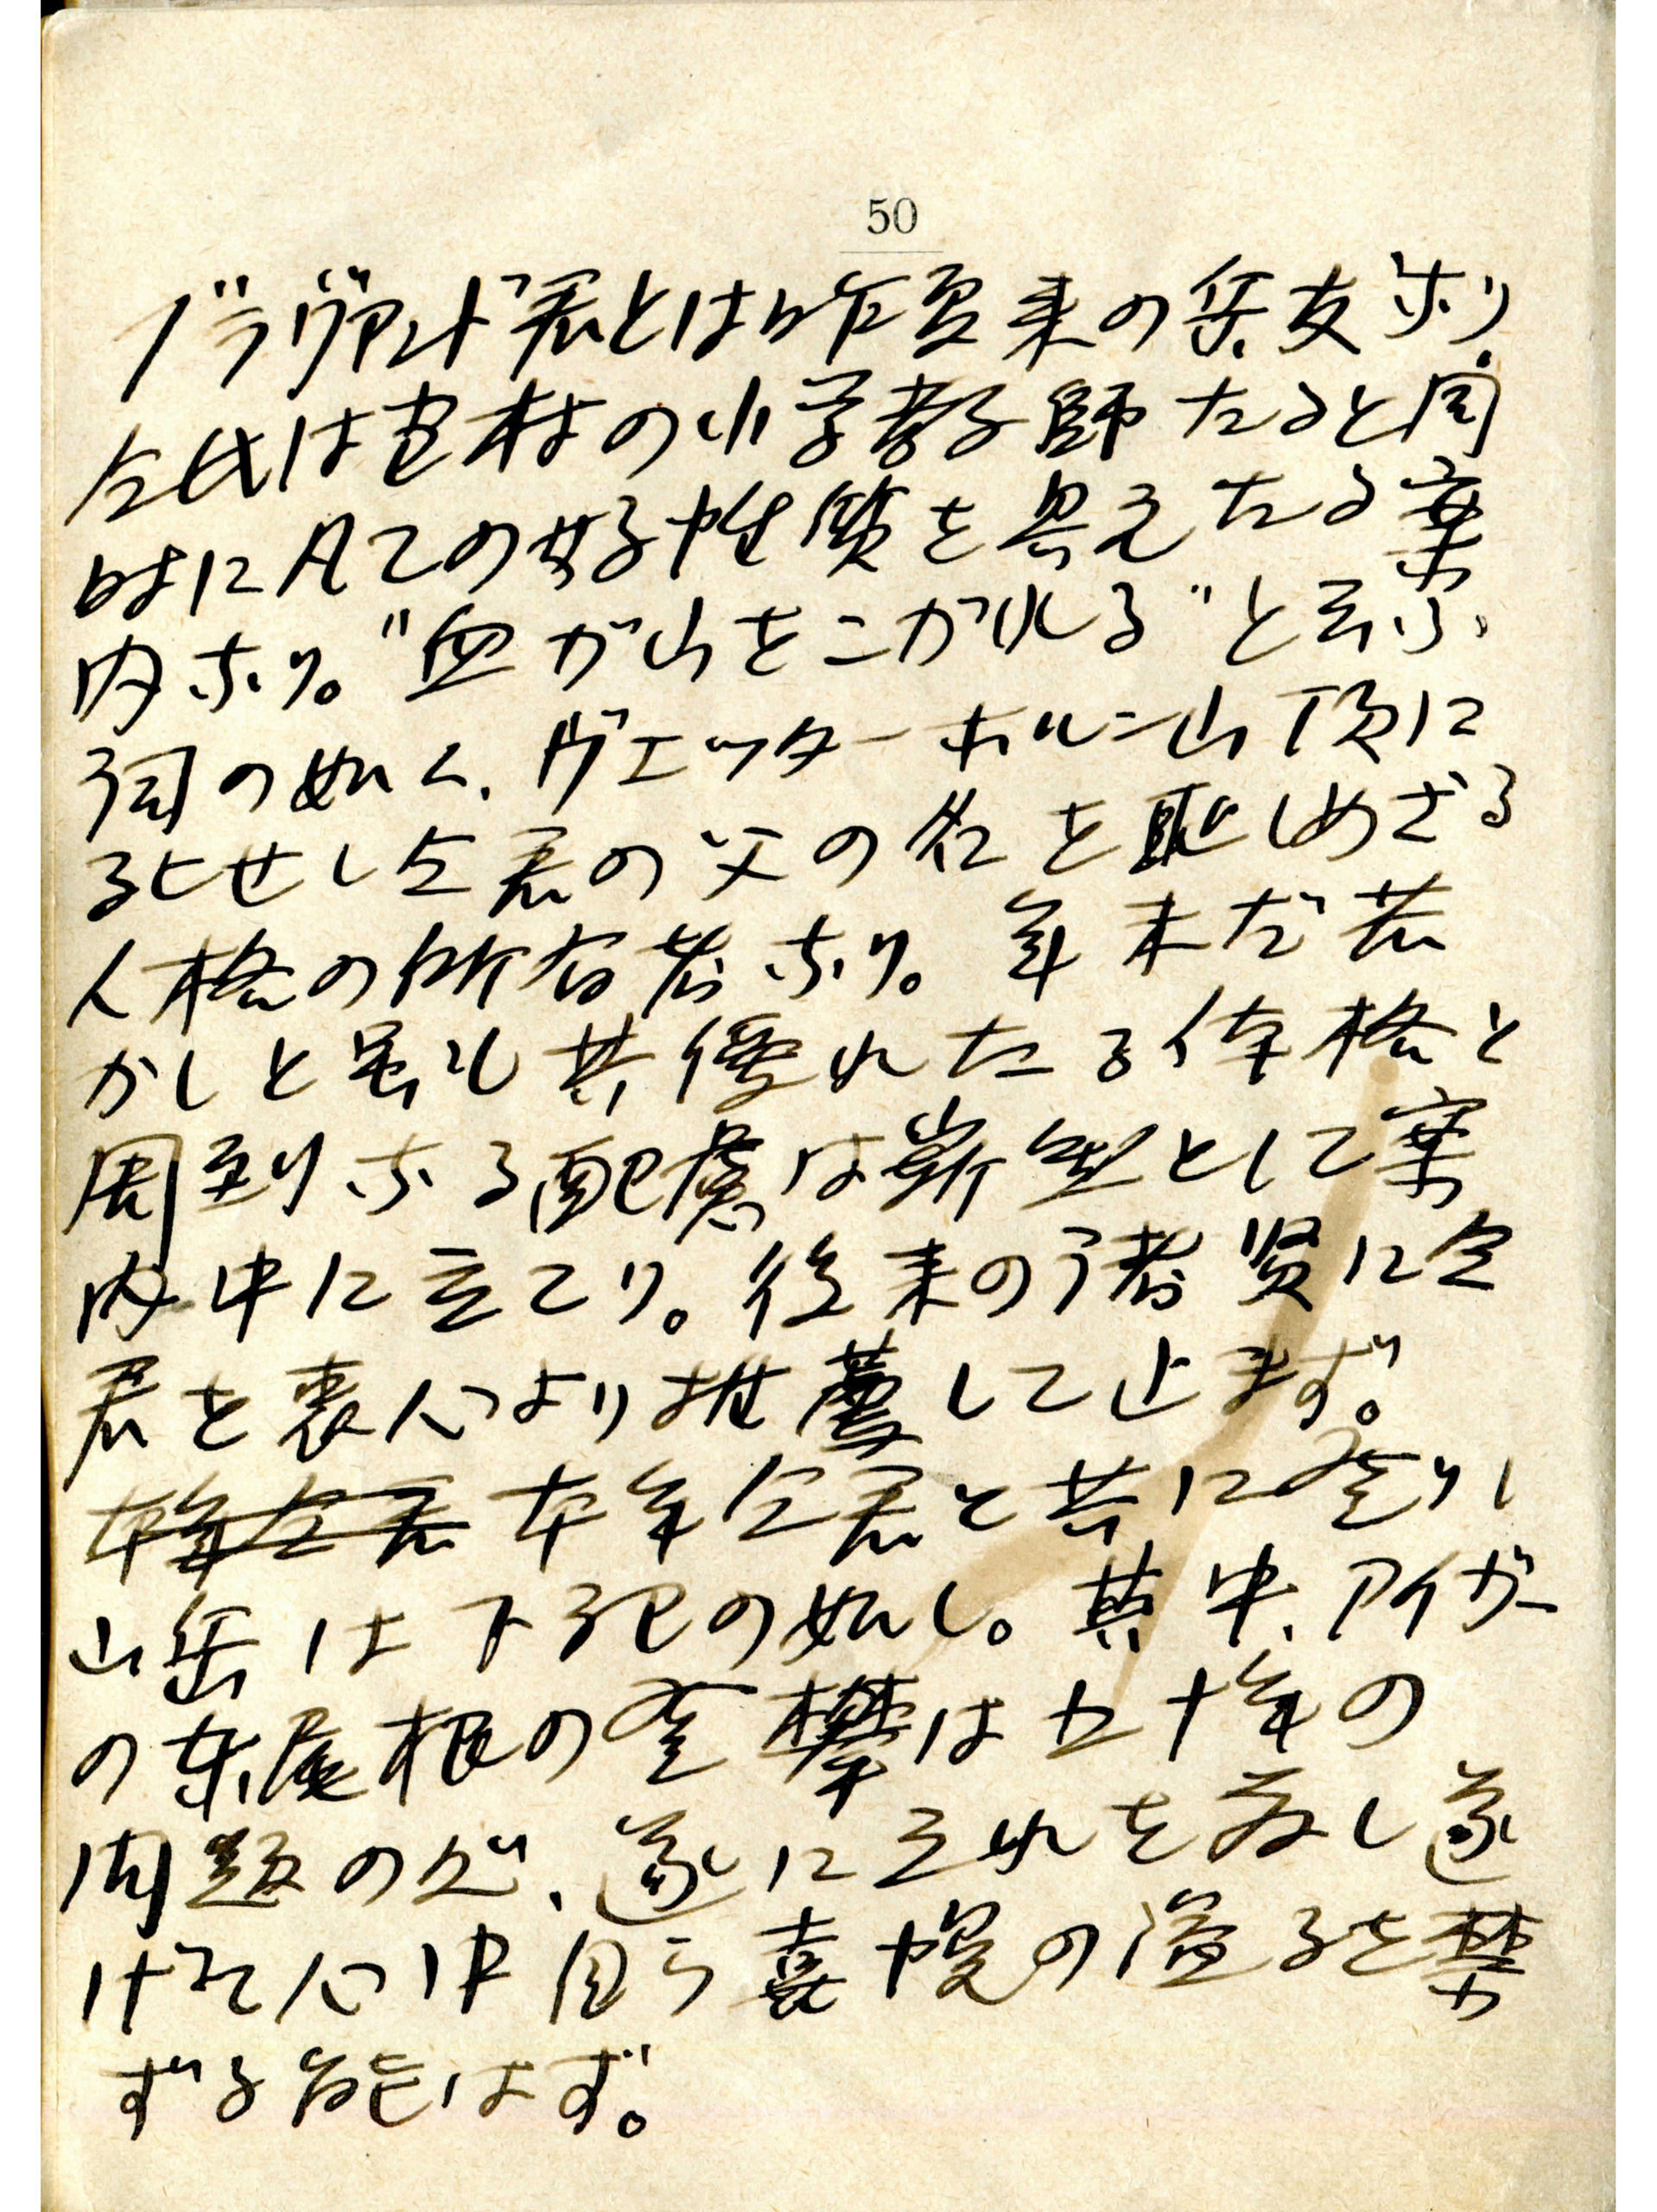 Abbildung der japanische Empfehlung von Yuki Maki